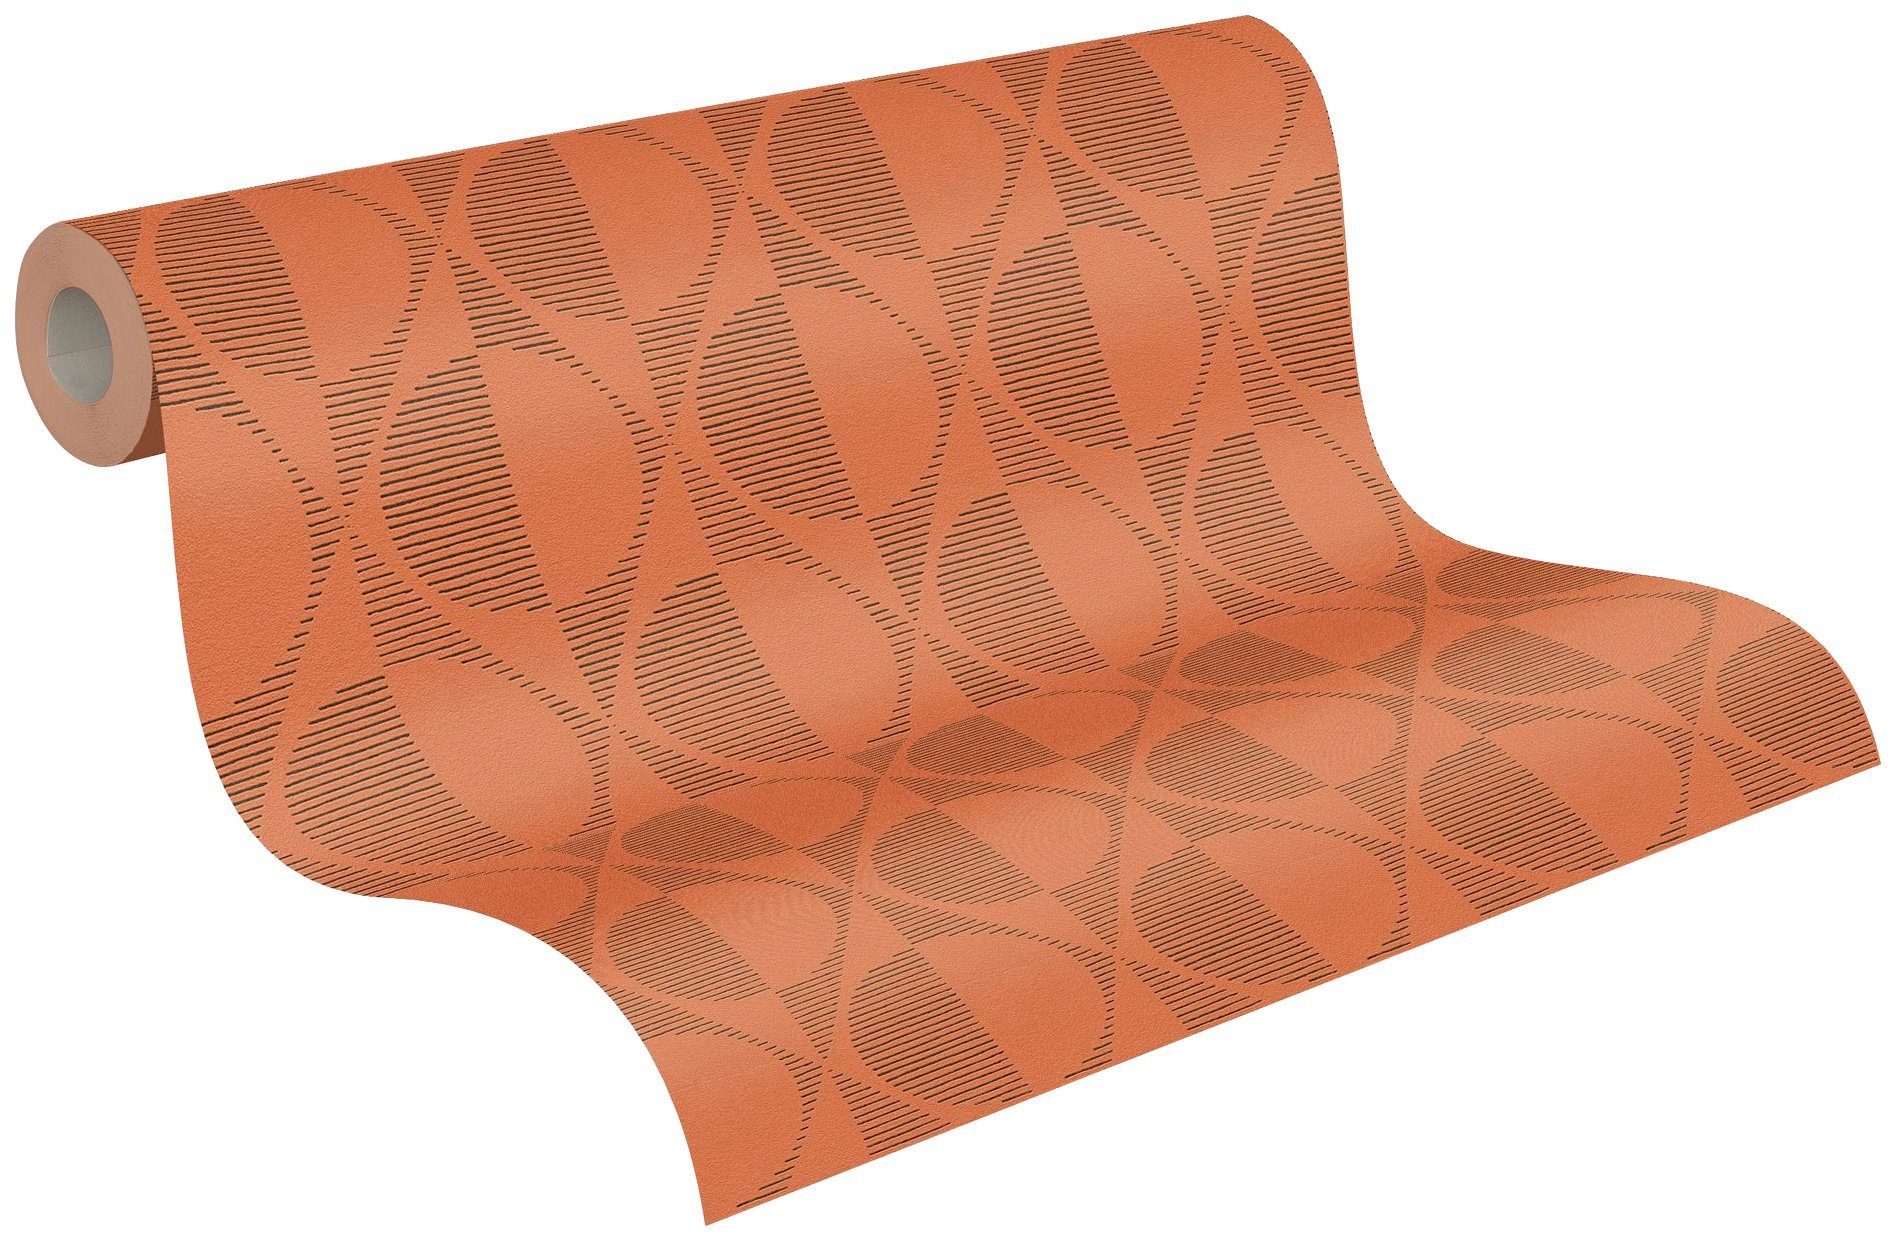 A.S. Création Vliestapete Pop schwarz/orange Style, Tapete gemustert, aufgeschäumt, Geometrische gepunktet